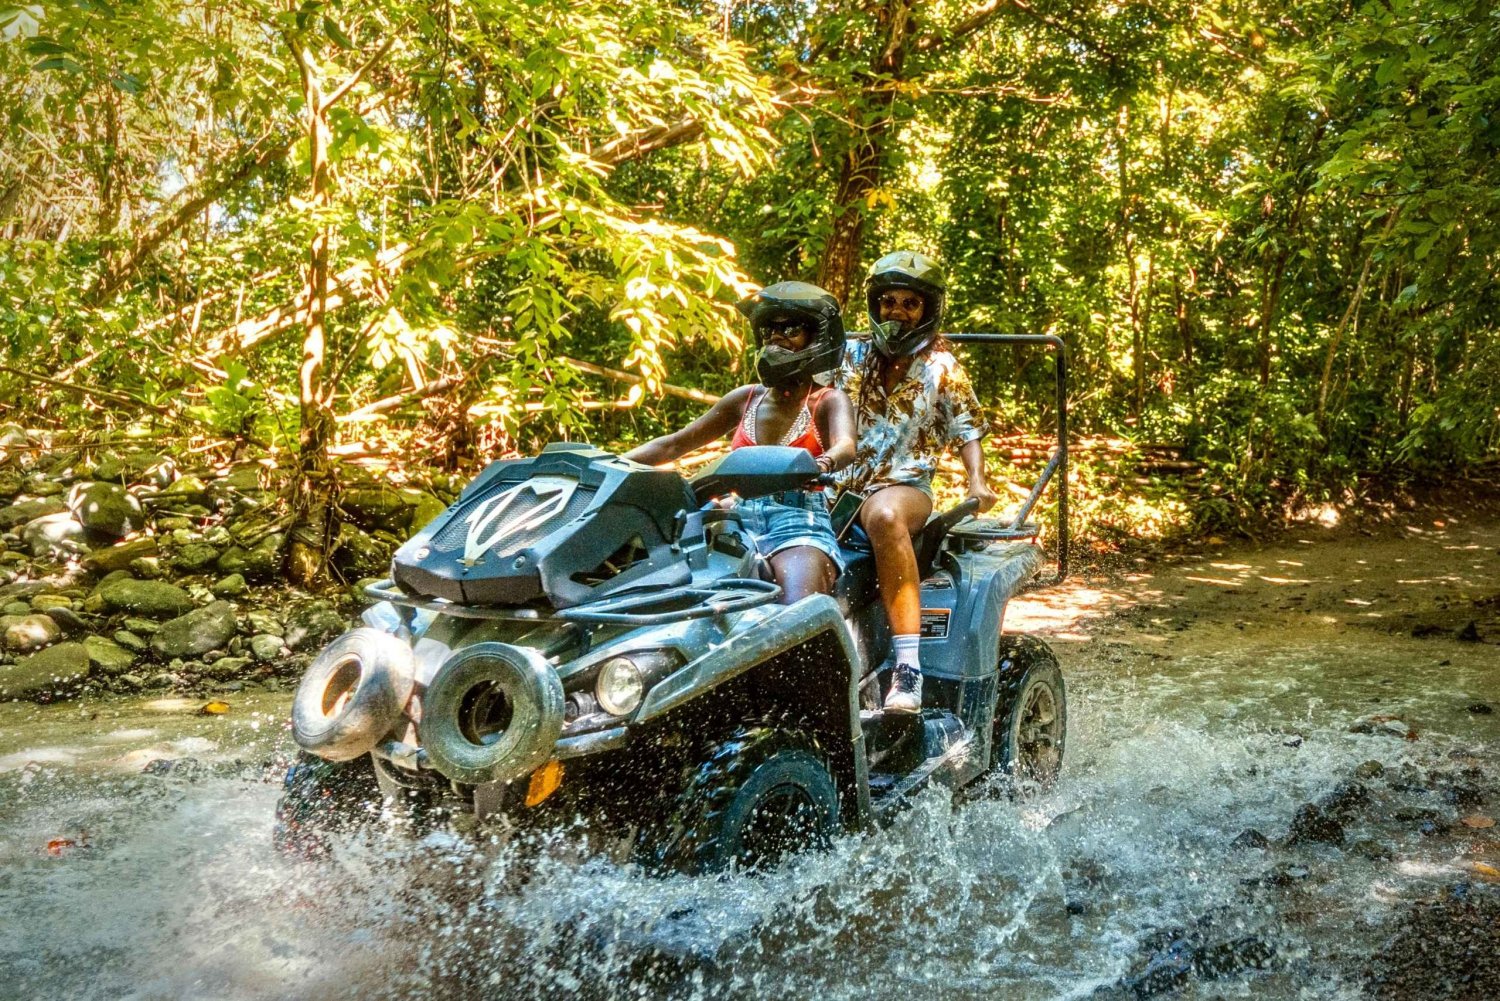 Carabalí Rainforest Park: Guided ATV Adventure Tour